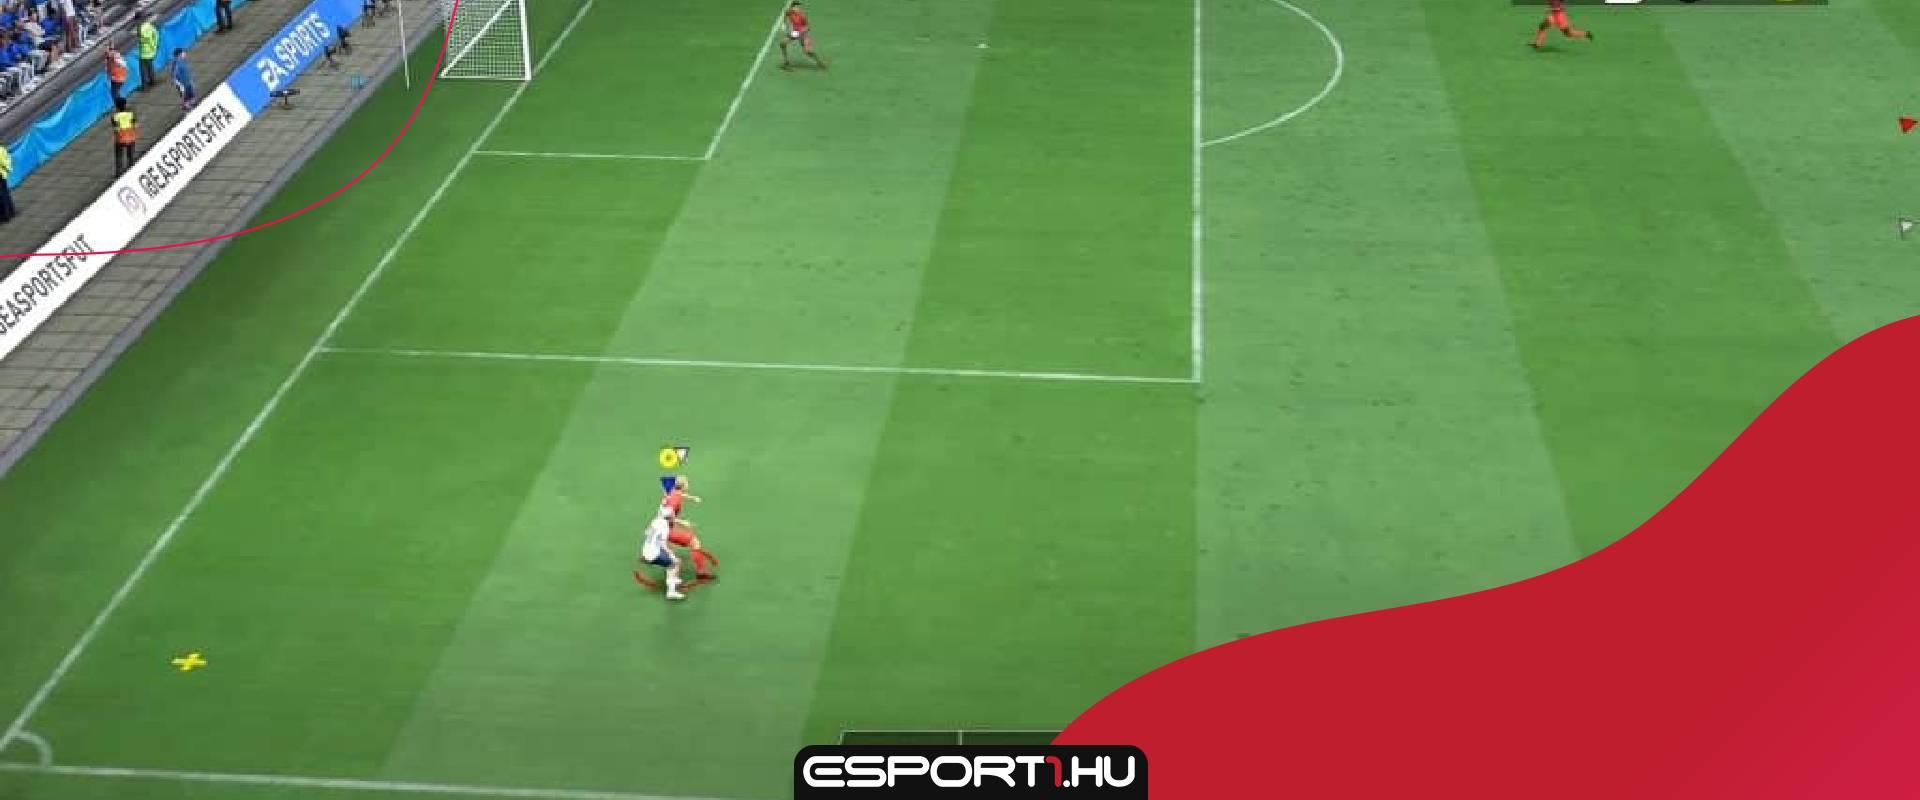 Nevetséges hibát fedeztek fel a FIFA 22-ben: videón az eltűnő játékosok